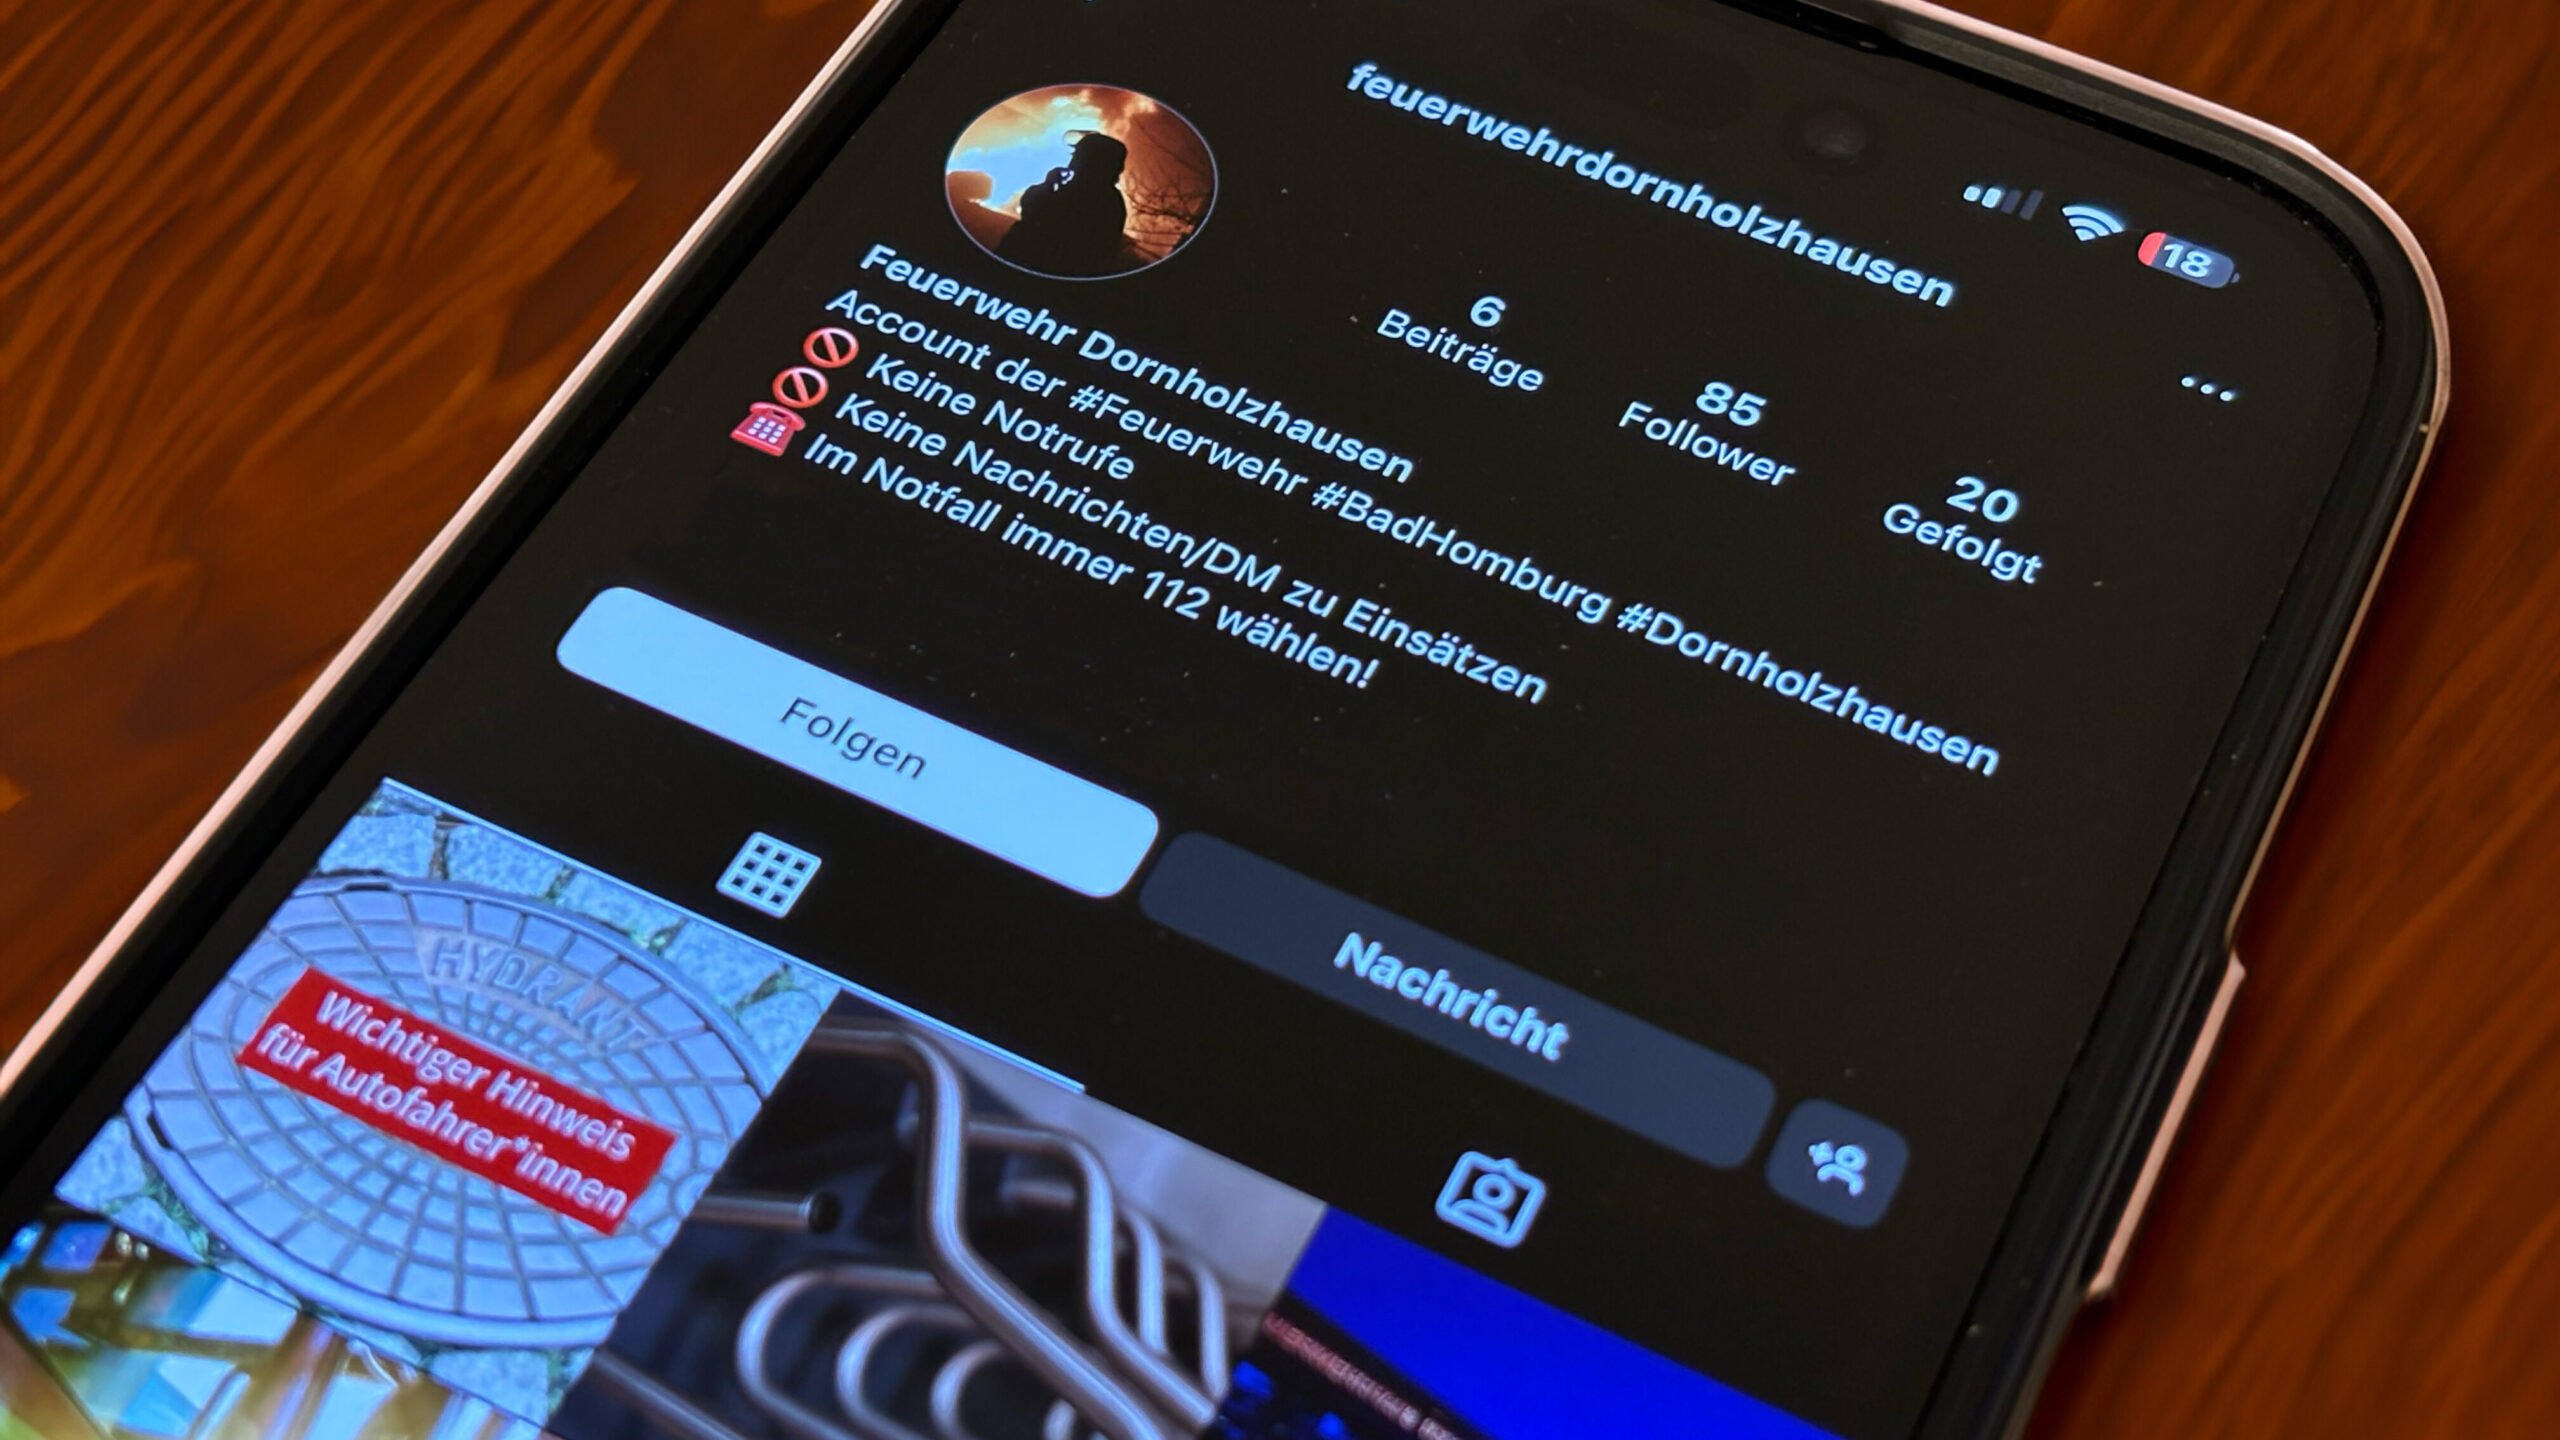 Auf einem Smartphone von Apple ist die Instagram-Seite der Feuerwehr Dornholzhausen geöffnet.